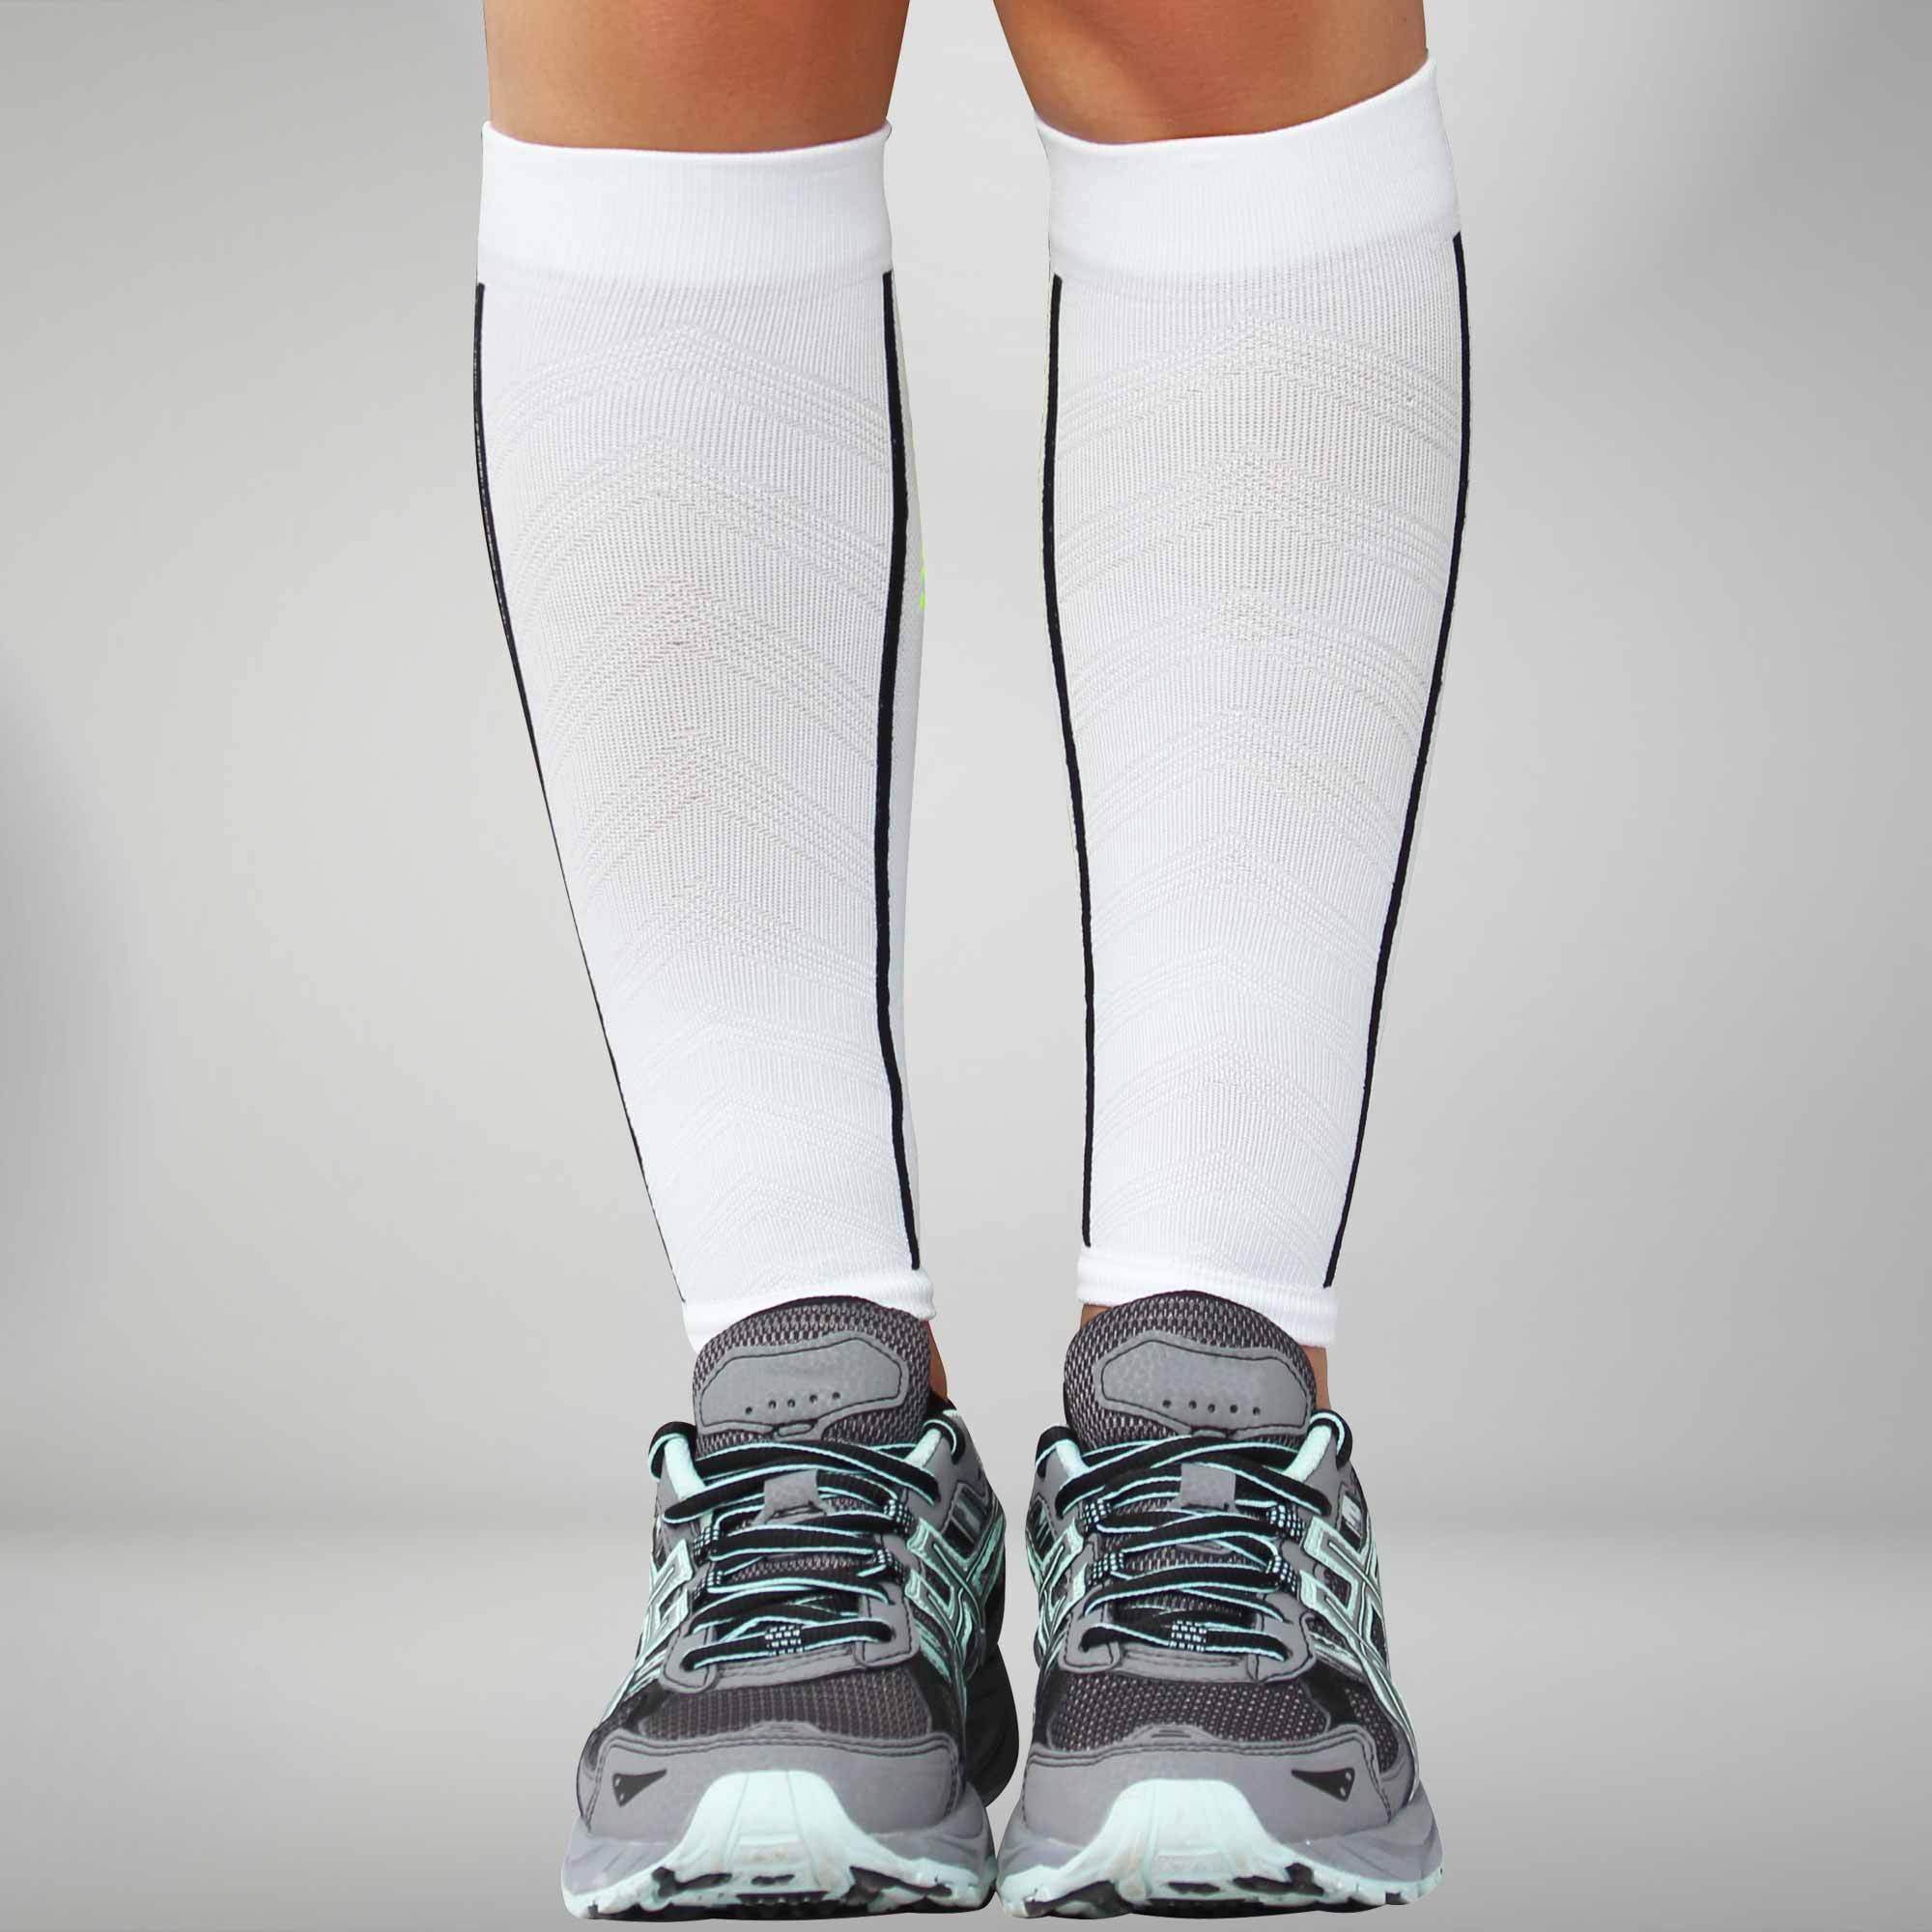 Zensah Compression Leg Sleeves, Aqua, Small/Medium, Sports Apparel